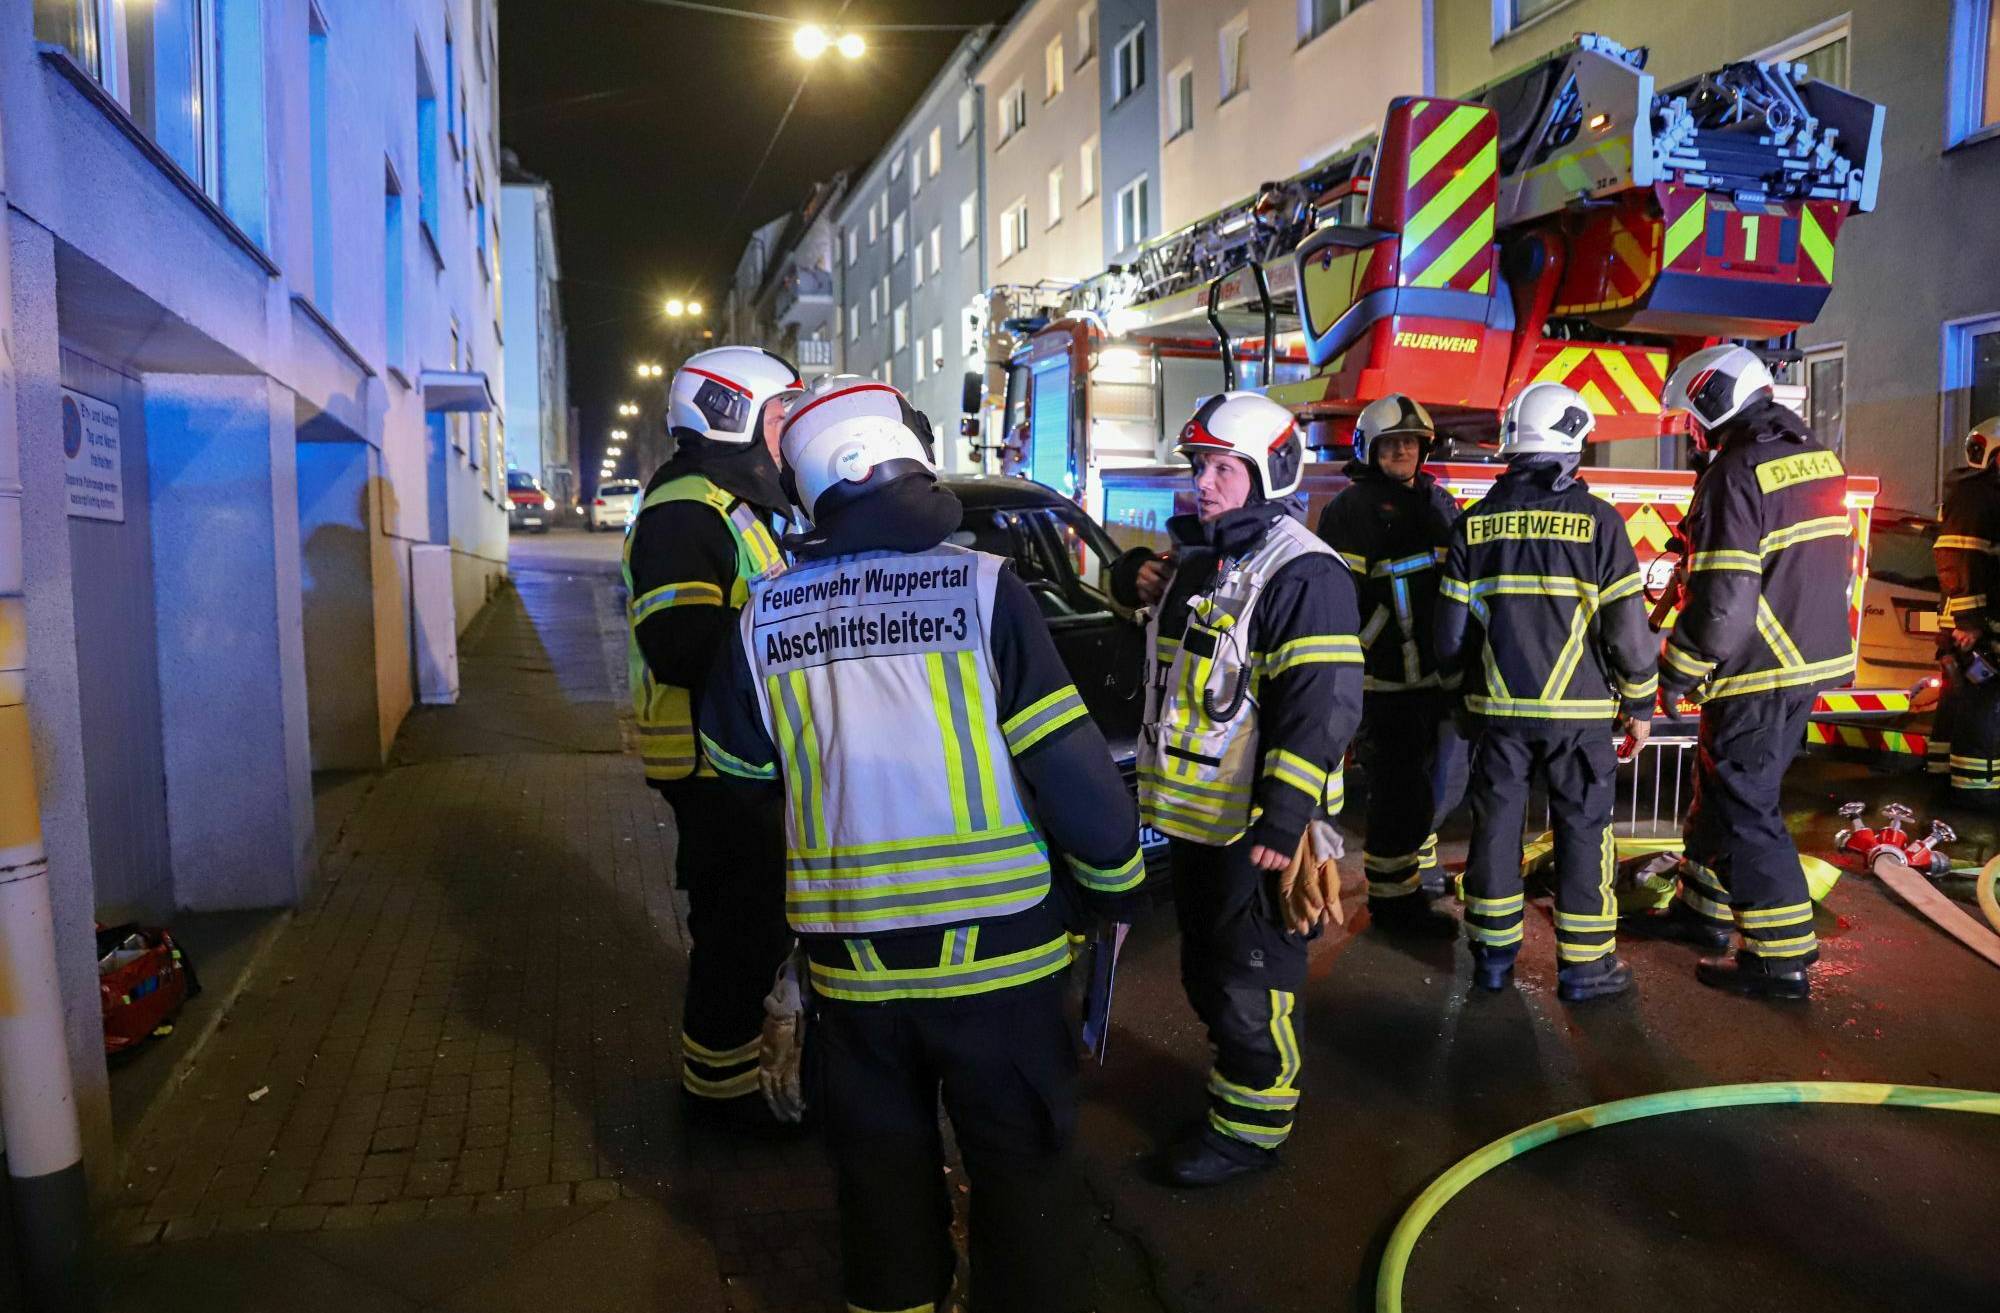 Feuerwehr-Einsatz durch brennenden Gasofen​ in Wuppertal